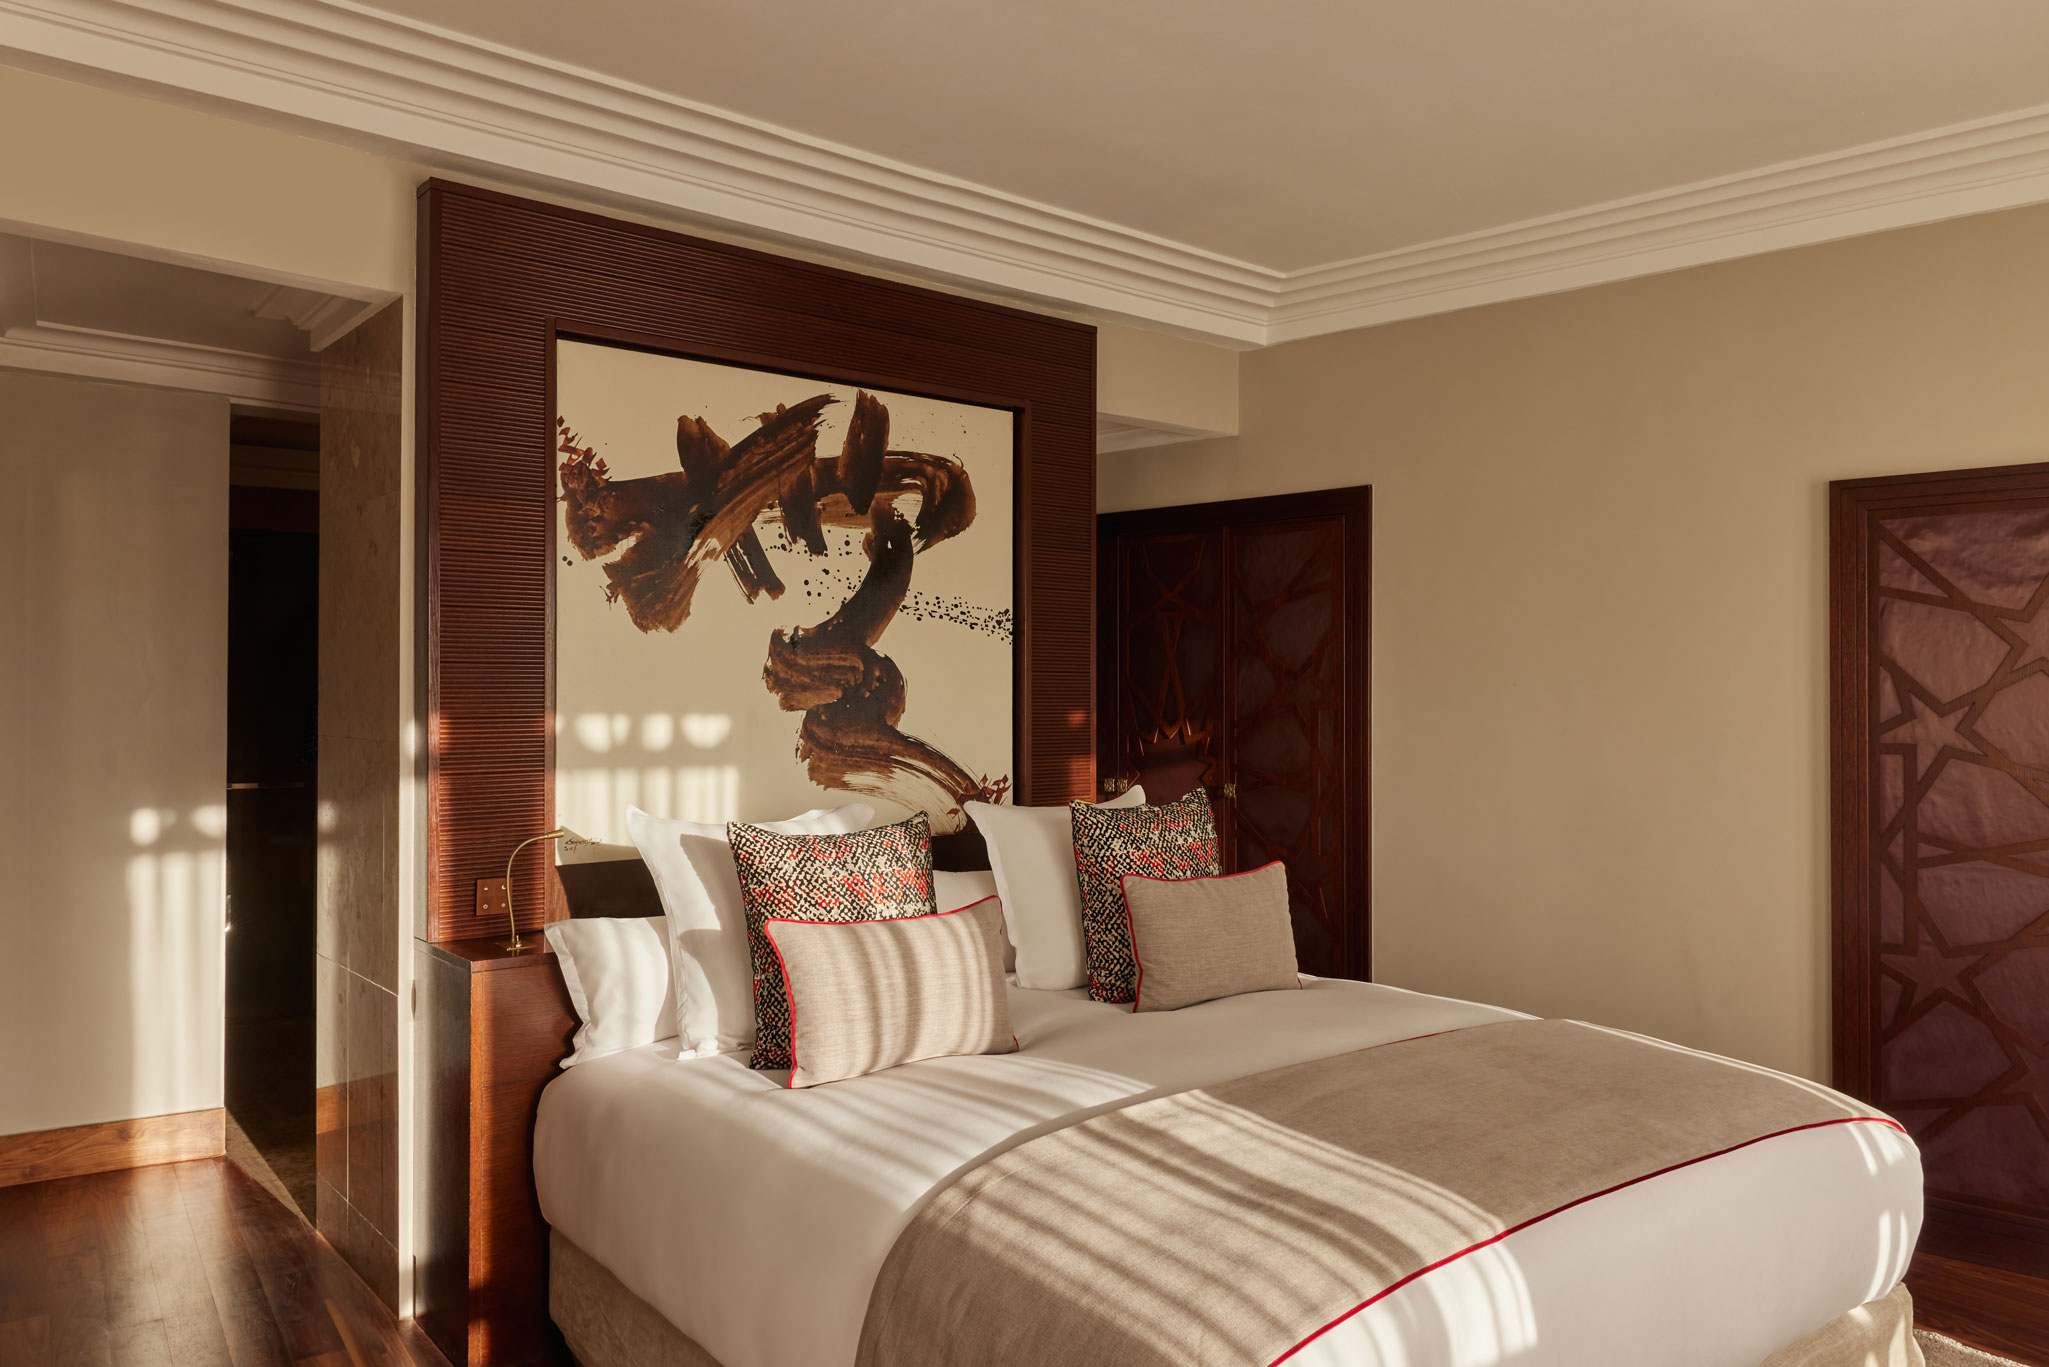 Nobu Hotel Marrakech Bedroom Suite